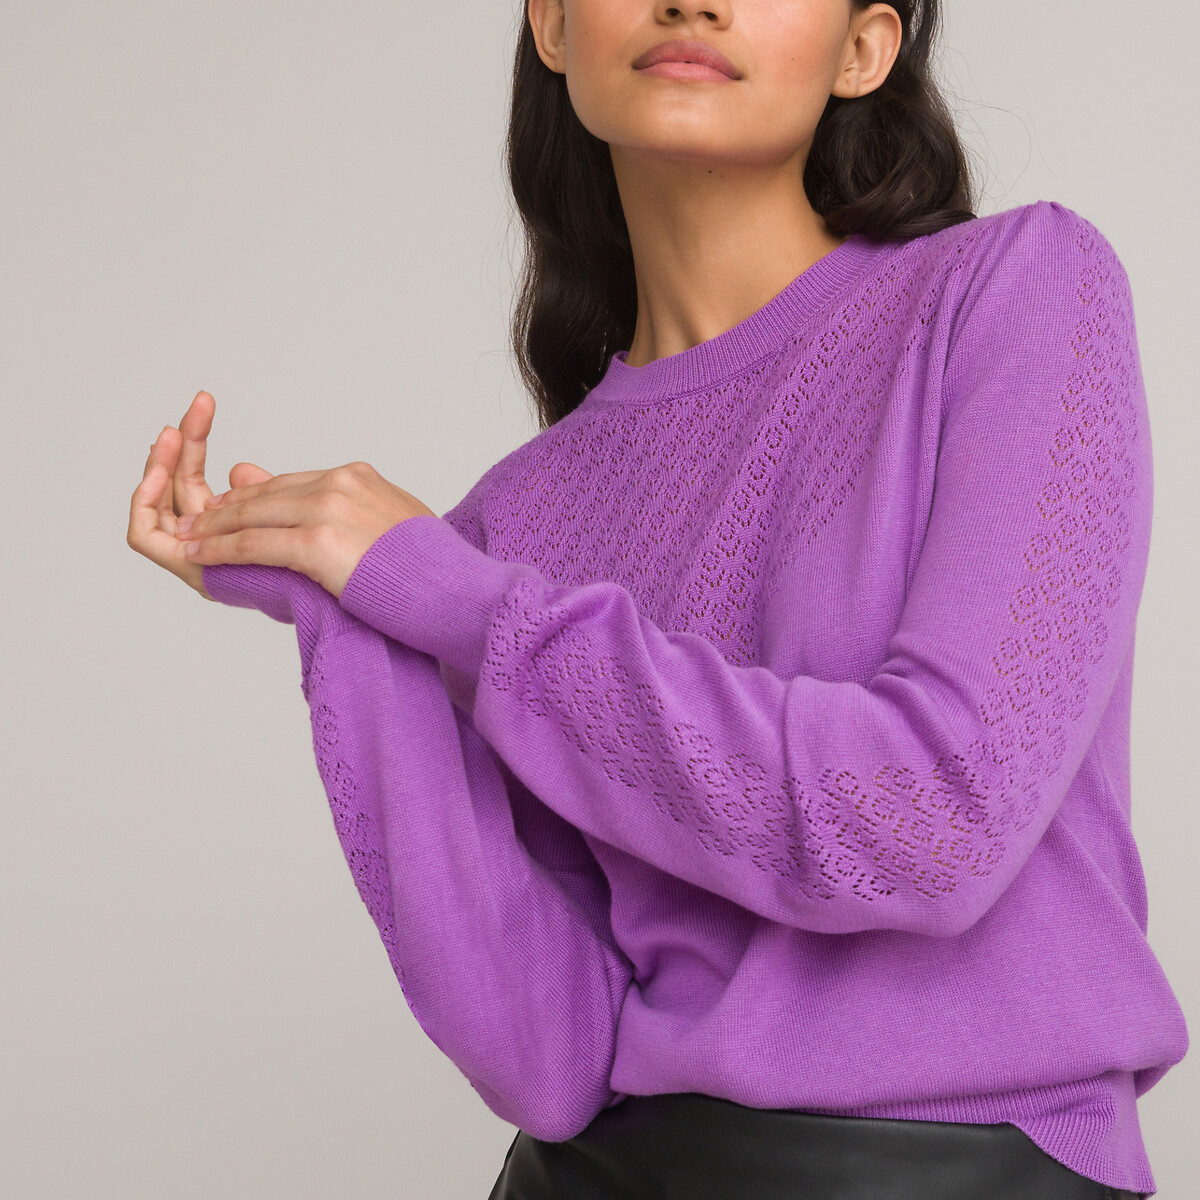 Пуловер с круглым вырезом из трикотажа пуантель S фиолетовый пуловер с тунисским вырезом из трикотажа пуантель s фиолетовый